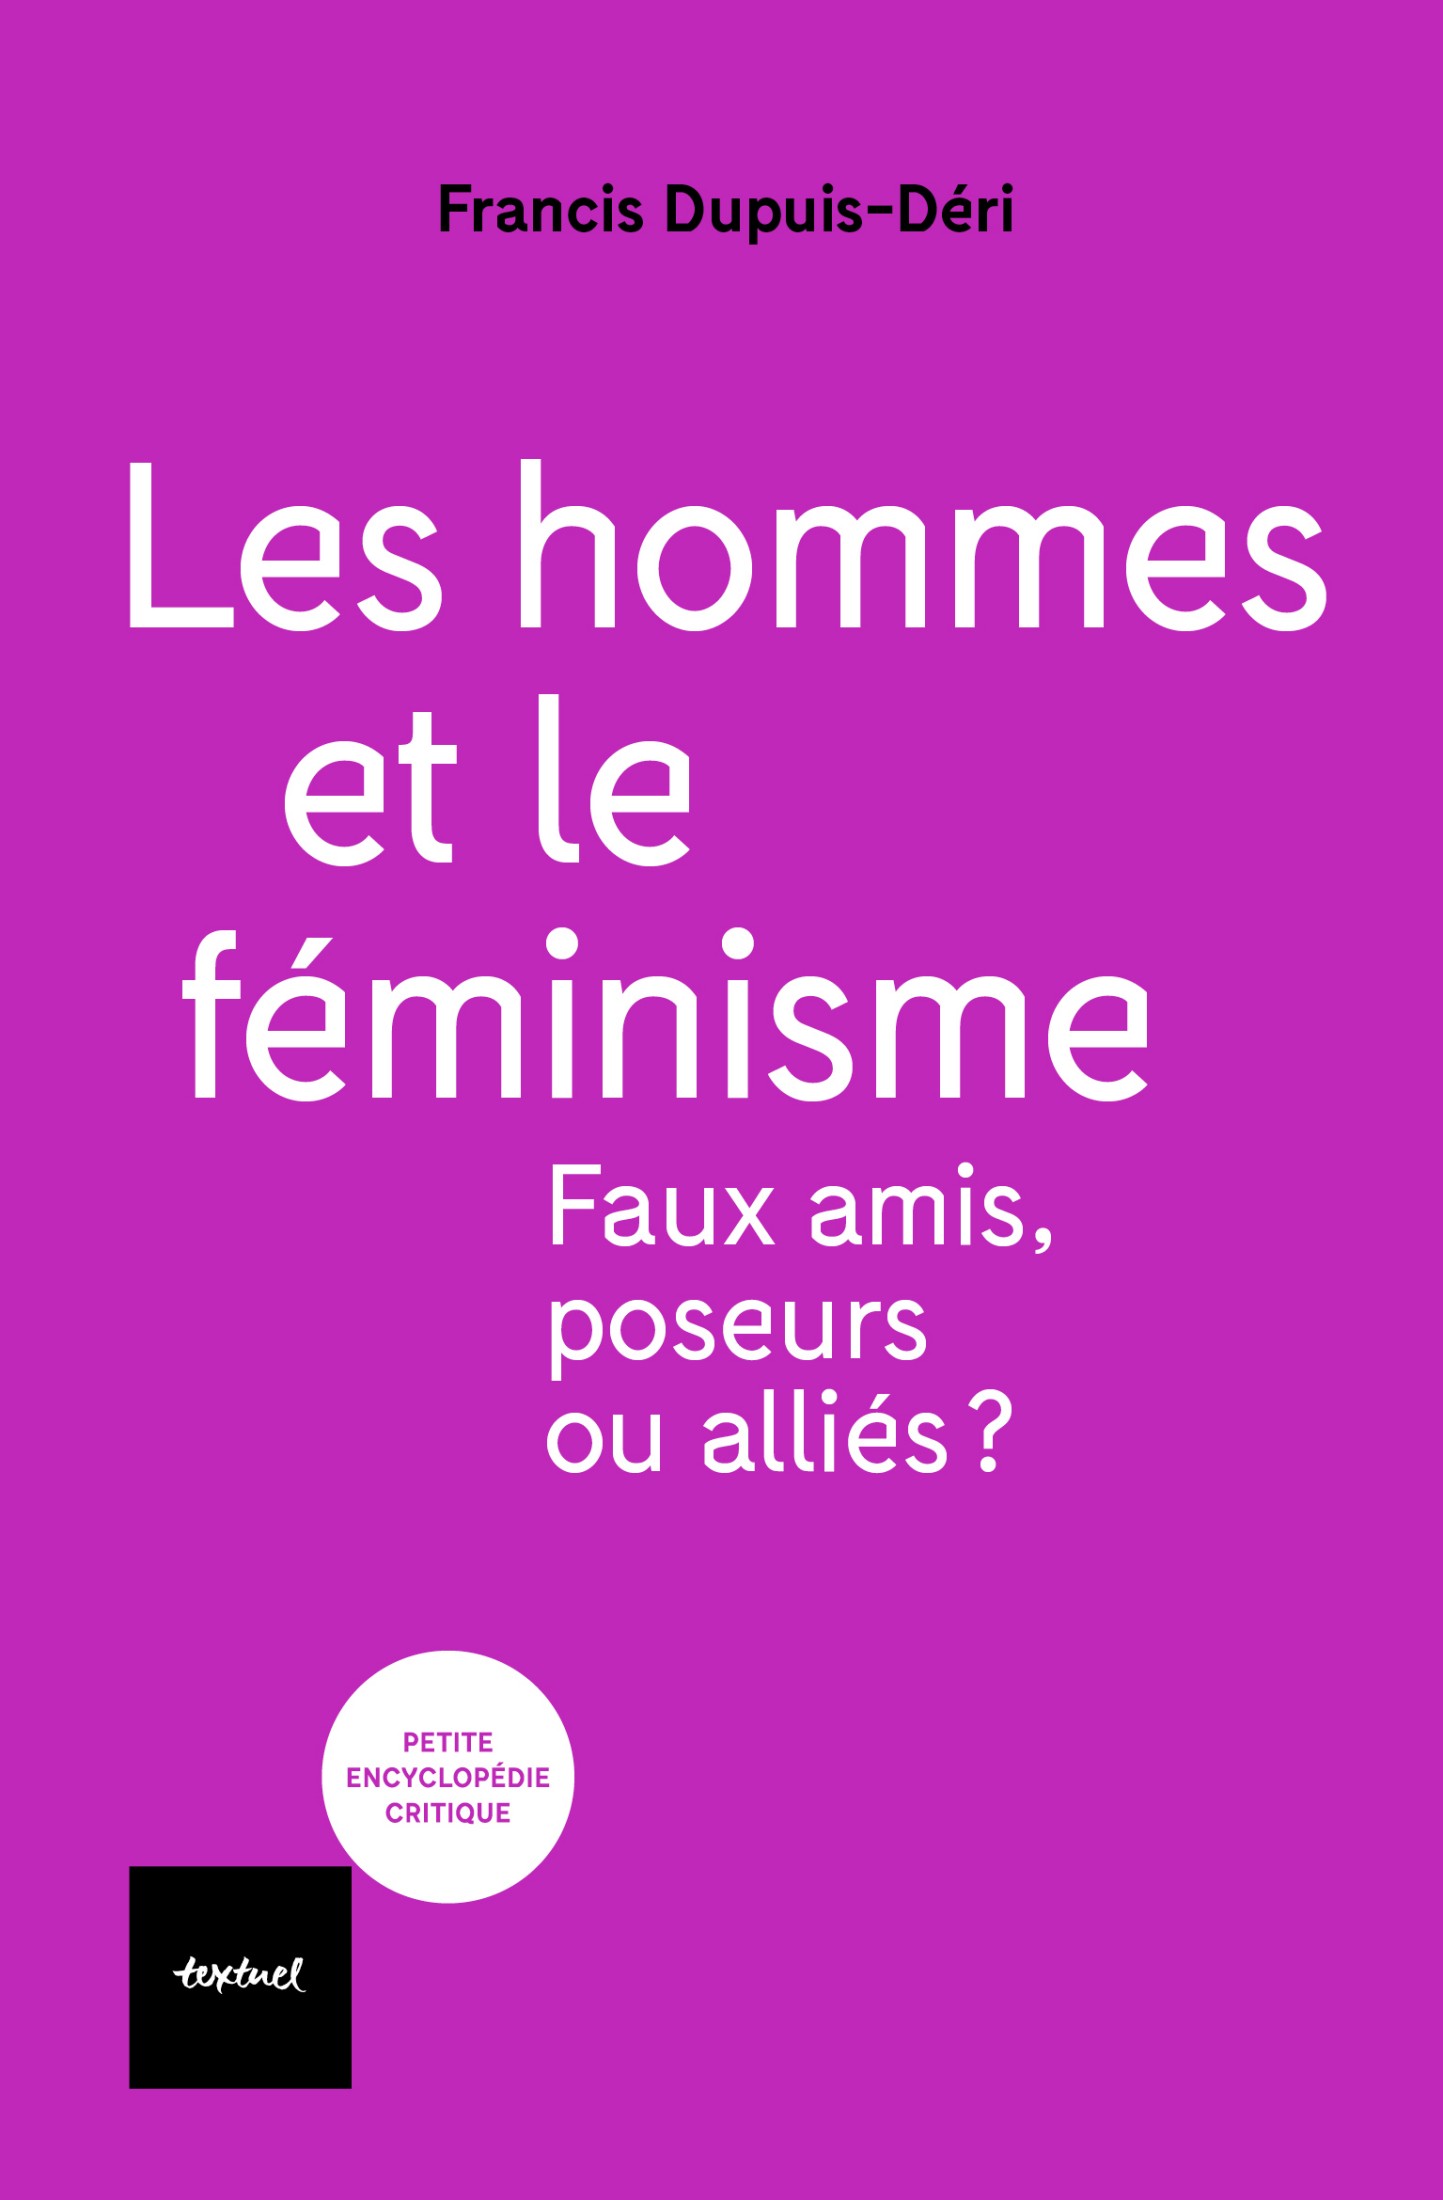 Francis Dupuis-Déri: Les hommes et le féminisme (Français language, 2022, Éditions Textuel)